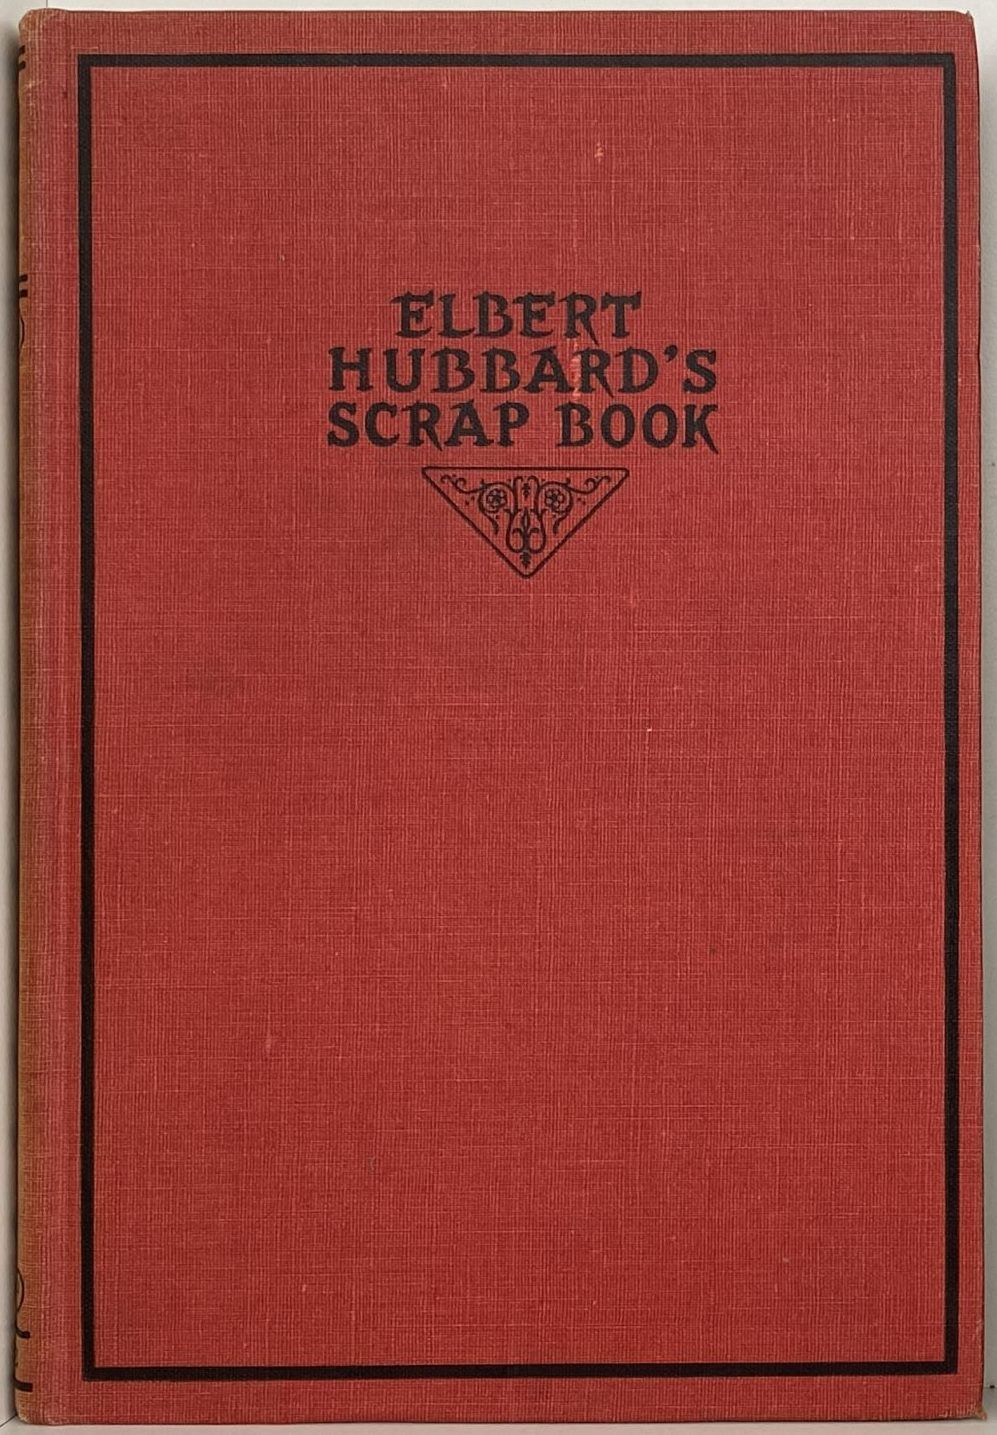 ELBERT HUBBARD'S Scrap Book